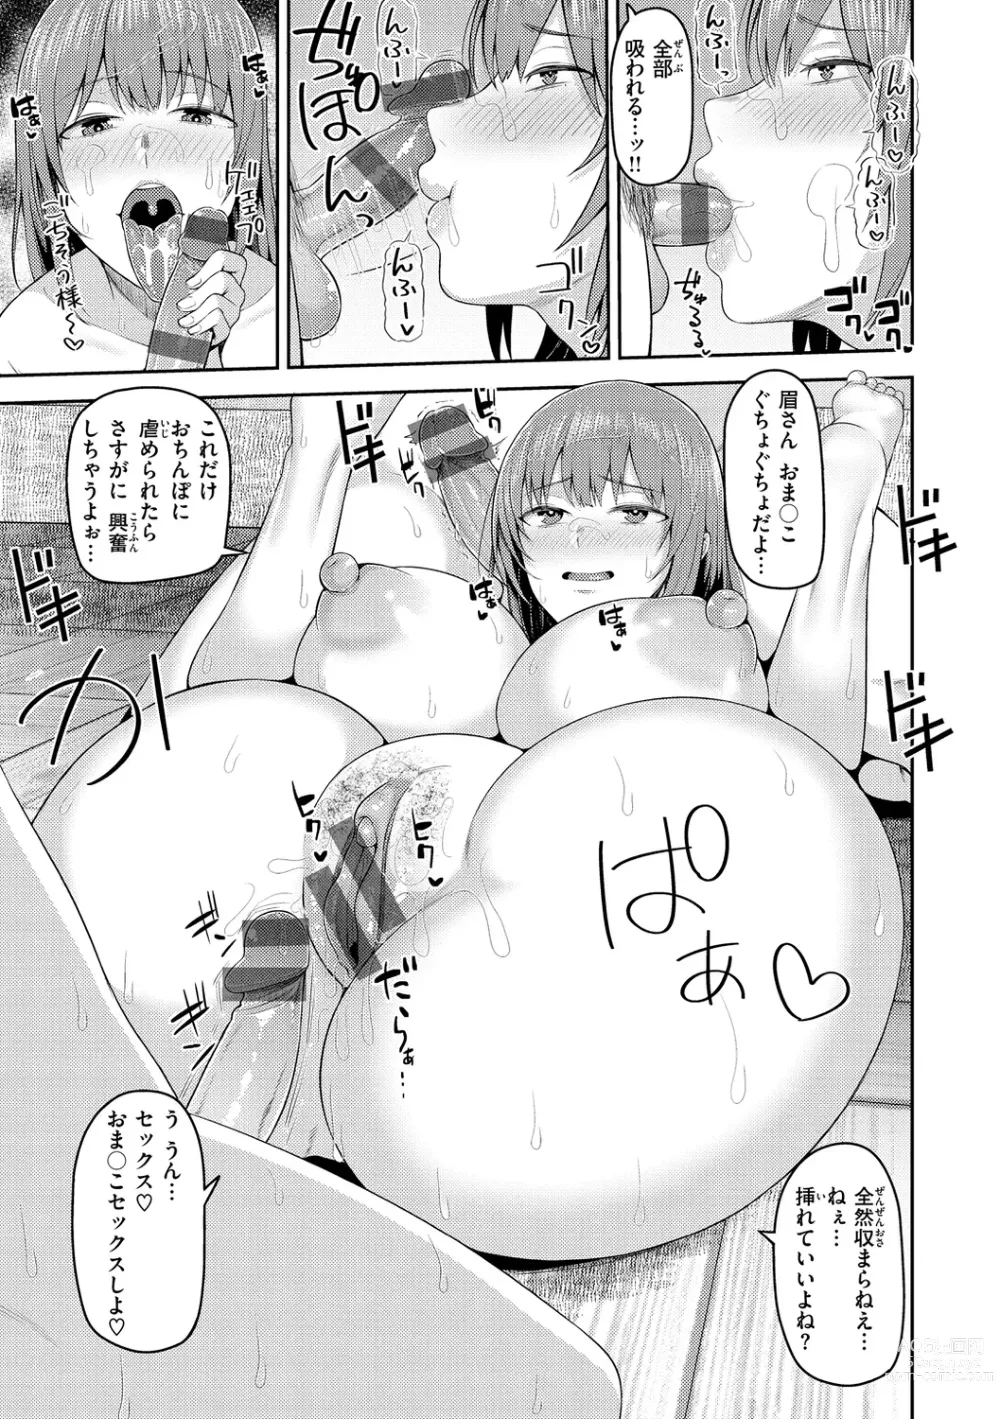 Page 149 of manga Amaete Hoshii no - I want you to spoil me